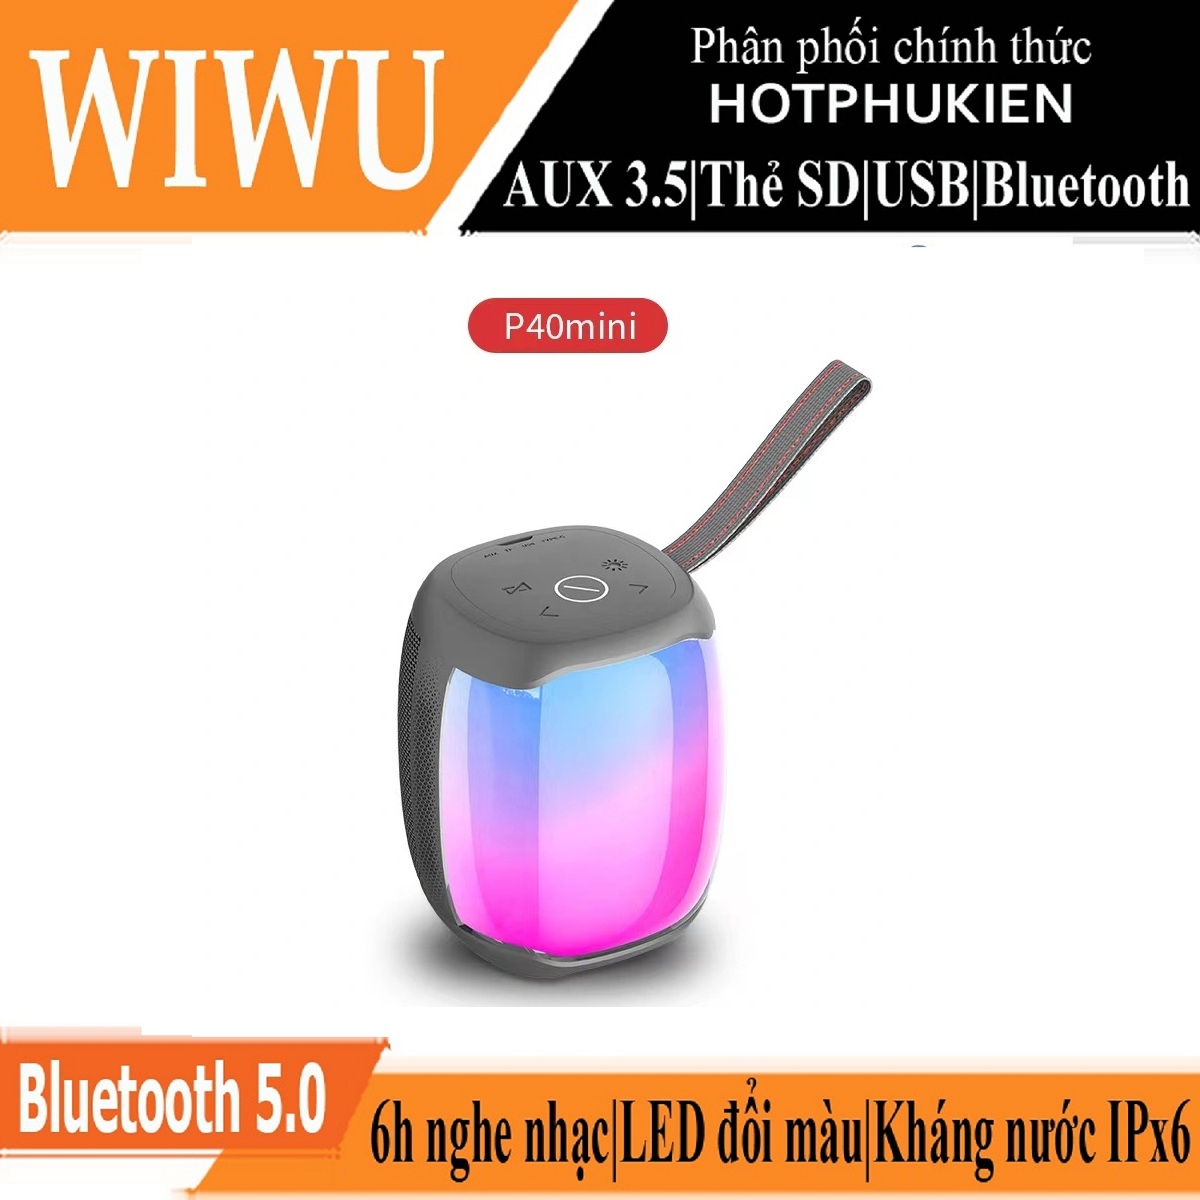 Loa di động thể thao bluetooth chống nước chuẩn IPx6 hiệu WIWU Thunder P40 MINI trang bị đèn LED đổi màu, công nghệ Bluetooth 5.0, Nghe đài radio FM, thẻ SD, có jack âm thanh AUX 3.5mm, thời gian nghe nhạc lên đến 6h - hàng nhập khẩu